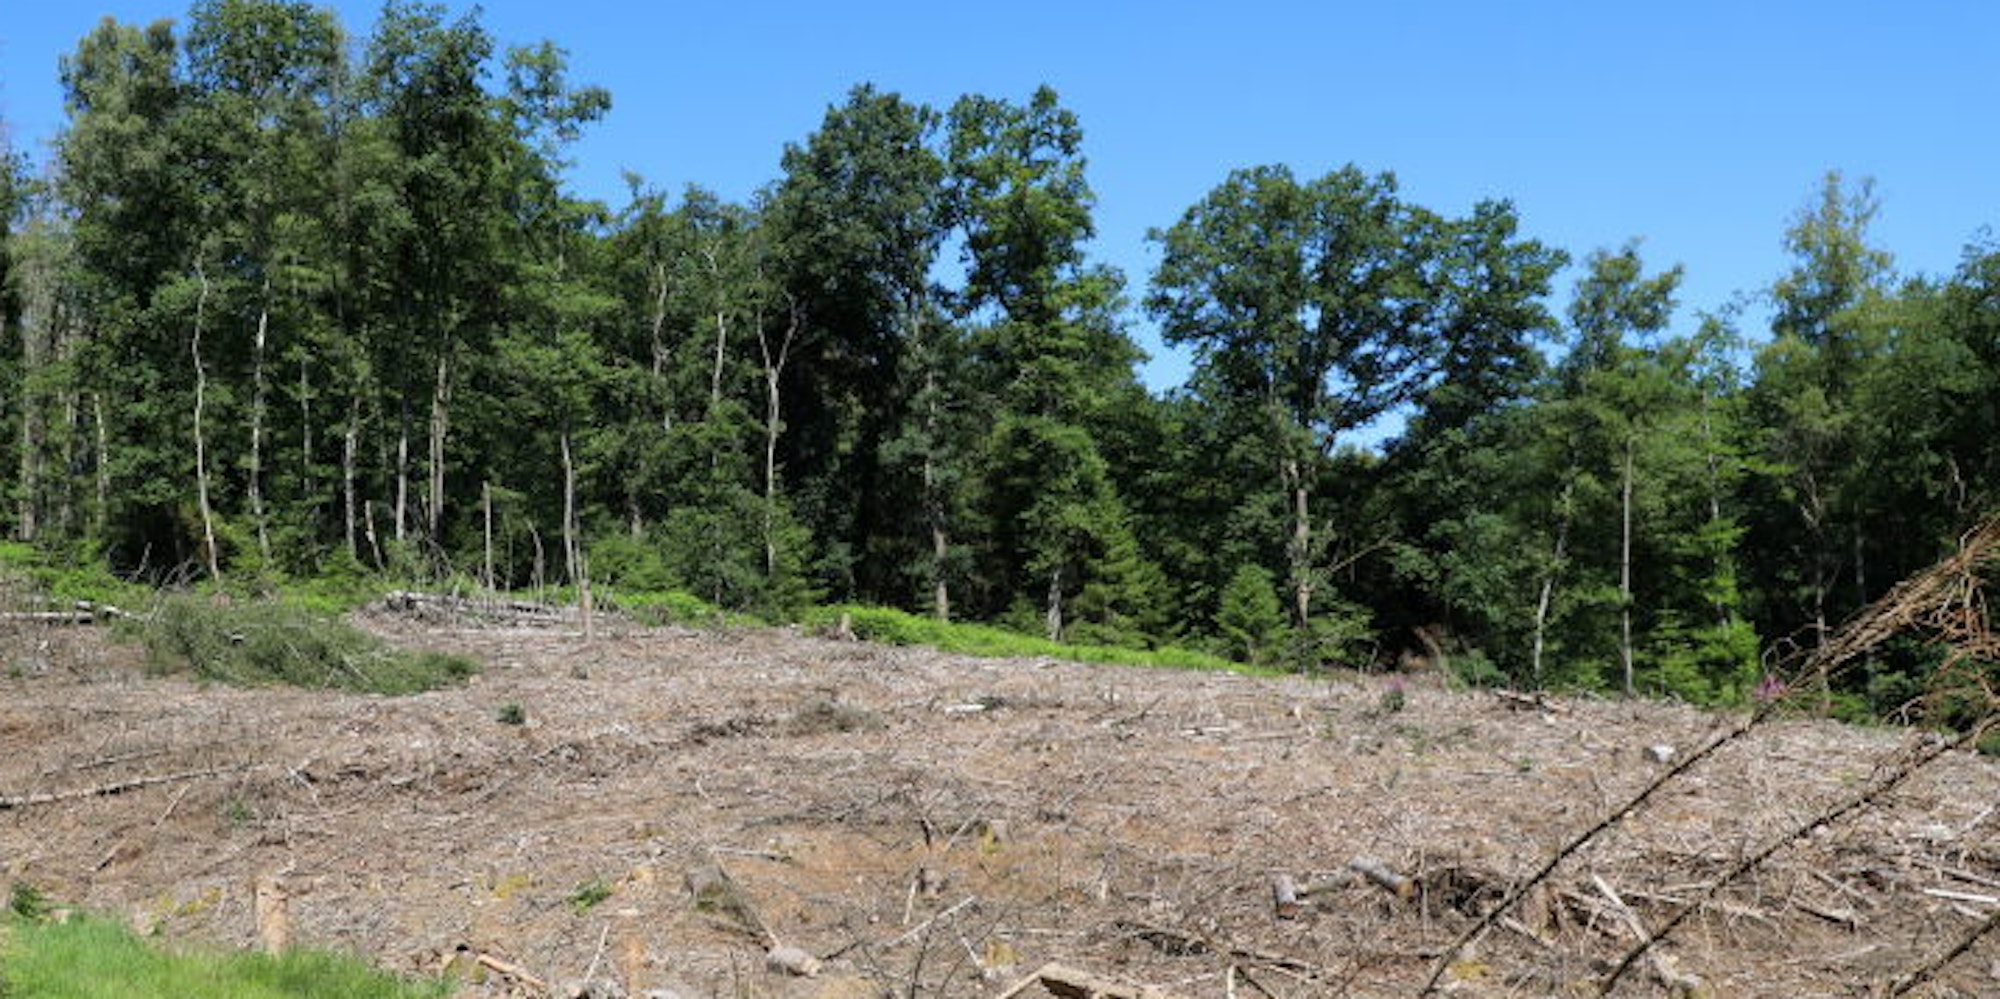 Abgeholzt: Ein kompletter Wald ist bei Wermelskirchen gestohlen worden. Die Polizei stellte noch einen Holz-Lkw.